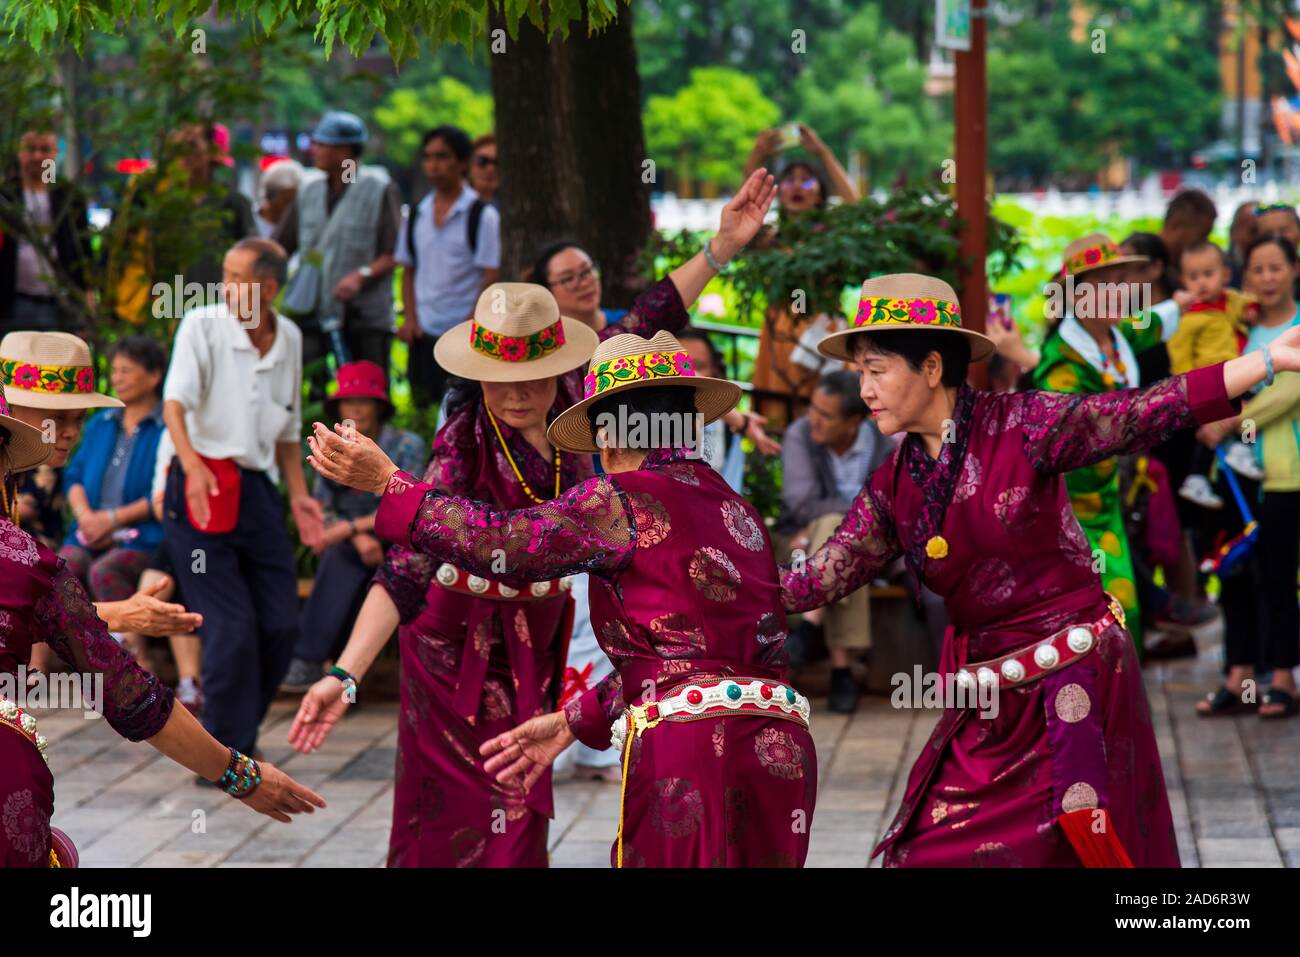 Kunming, China - 12 Juli 2019: Chinesen tanzen auf dem öffentlichen Platz im Park tragen Kleidung, die ethnischen Minderheiten angehören, in Kunming, Provinz Yunnan Stockfoto